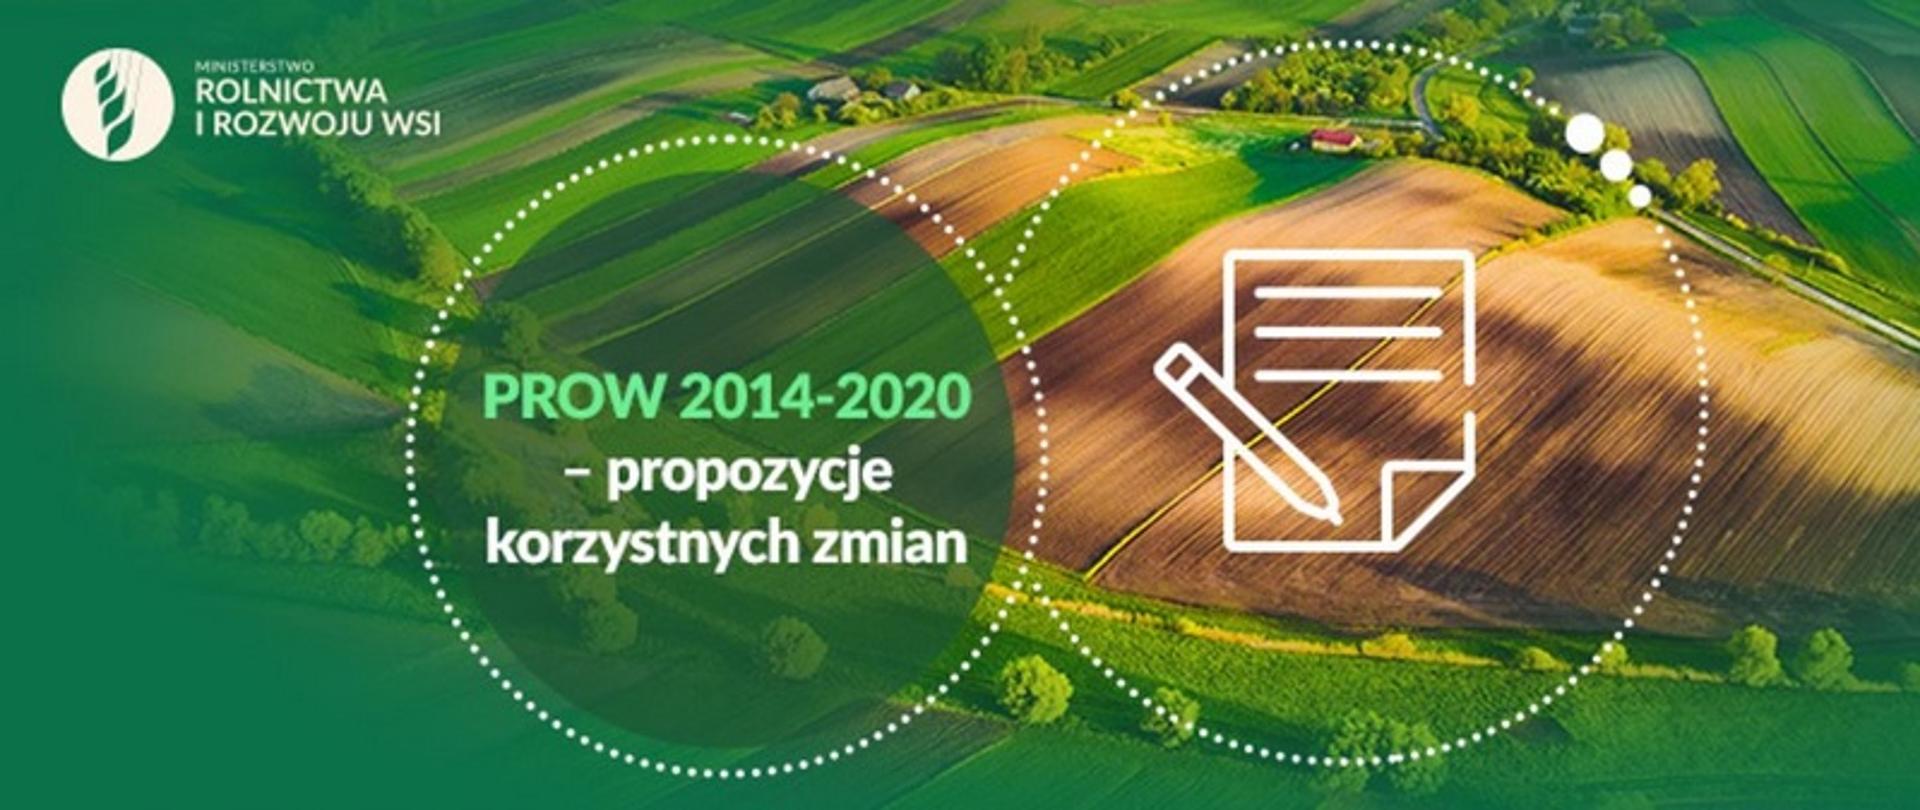 PROW 2014 - 2020 - propozycje korzystnych zmian